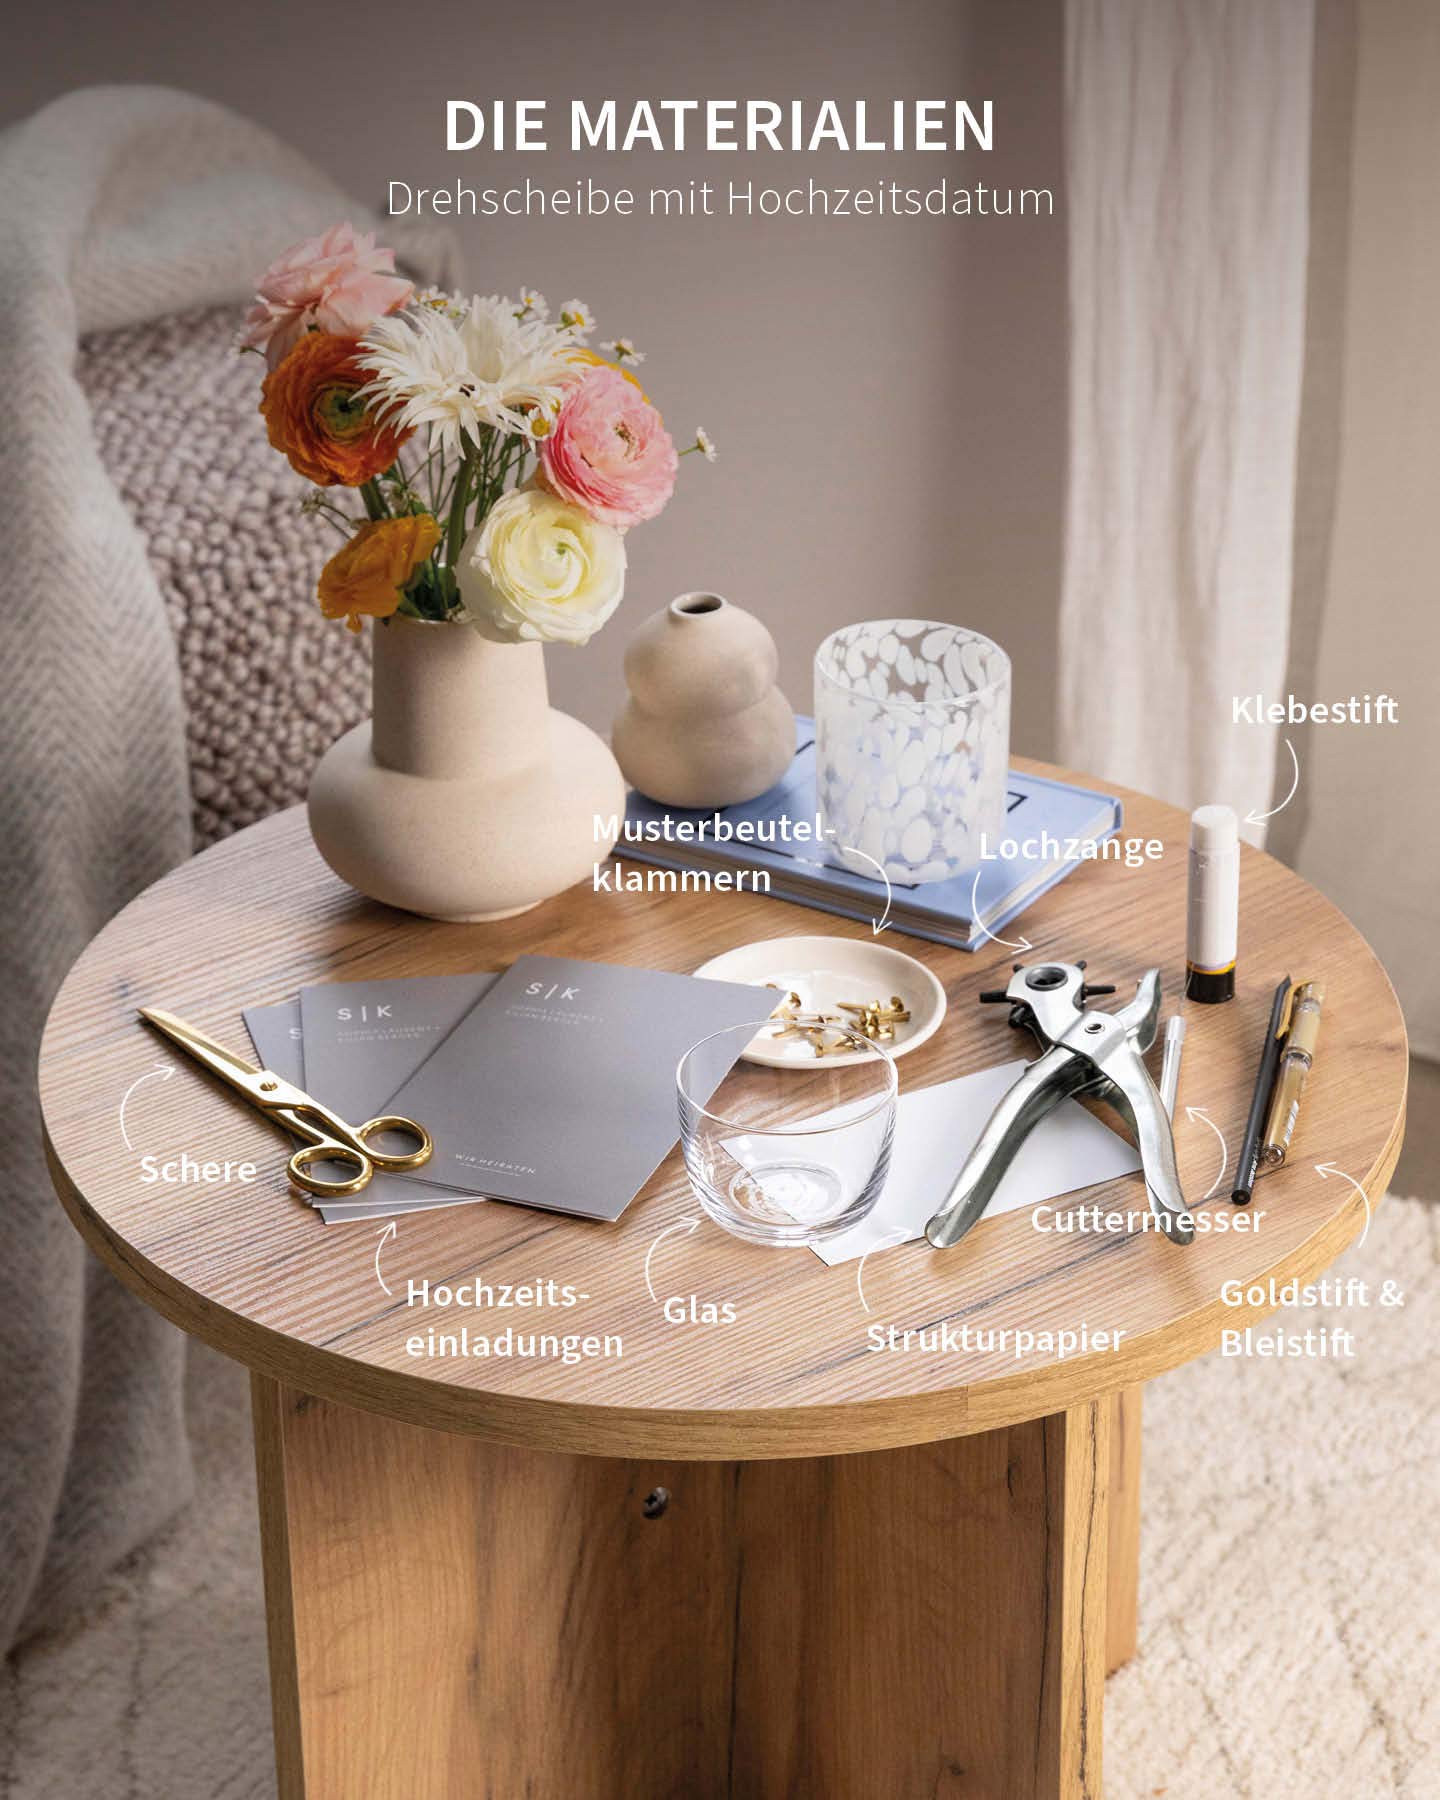 Materialien für das Hochzeitseinladungen DIY mit Drehscheibe liegen auf einem Tisch bereit